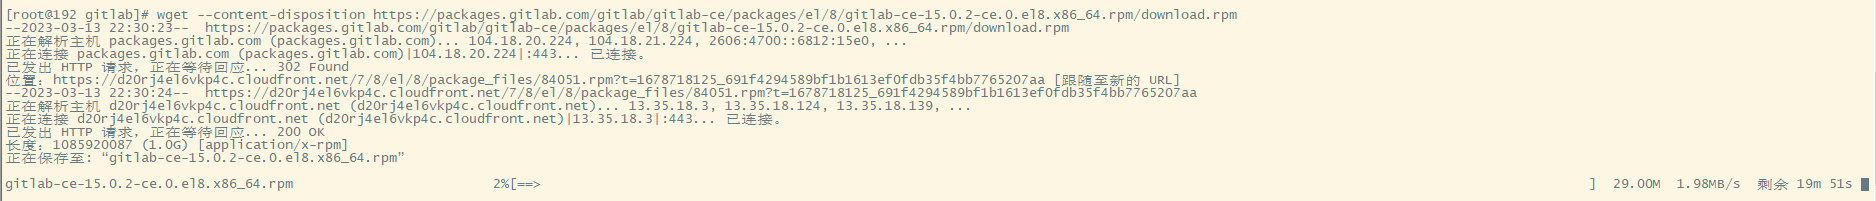 如何在 Linux CentOS 8 中搭建 GitLab 私有仓库并结合 Cpolar 内网穿透工具实现公网访问私有仓库【无公网IP内网穿透】